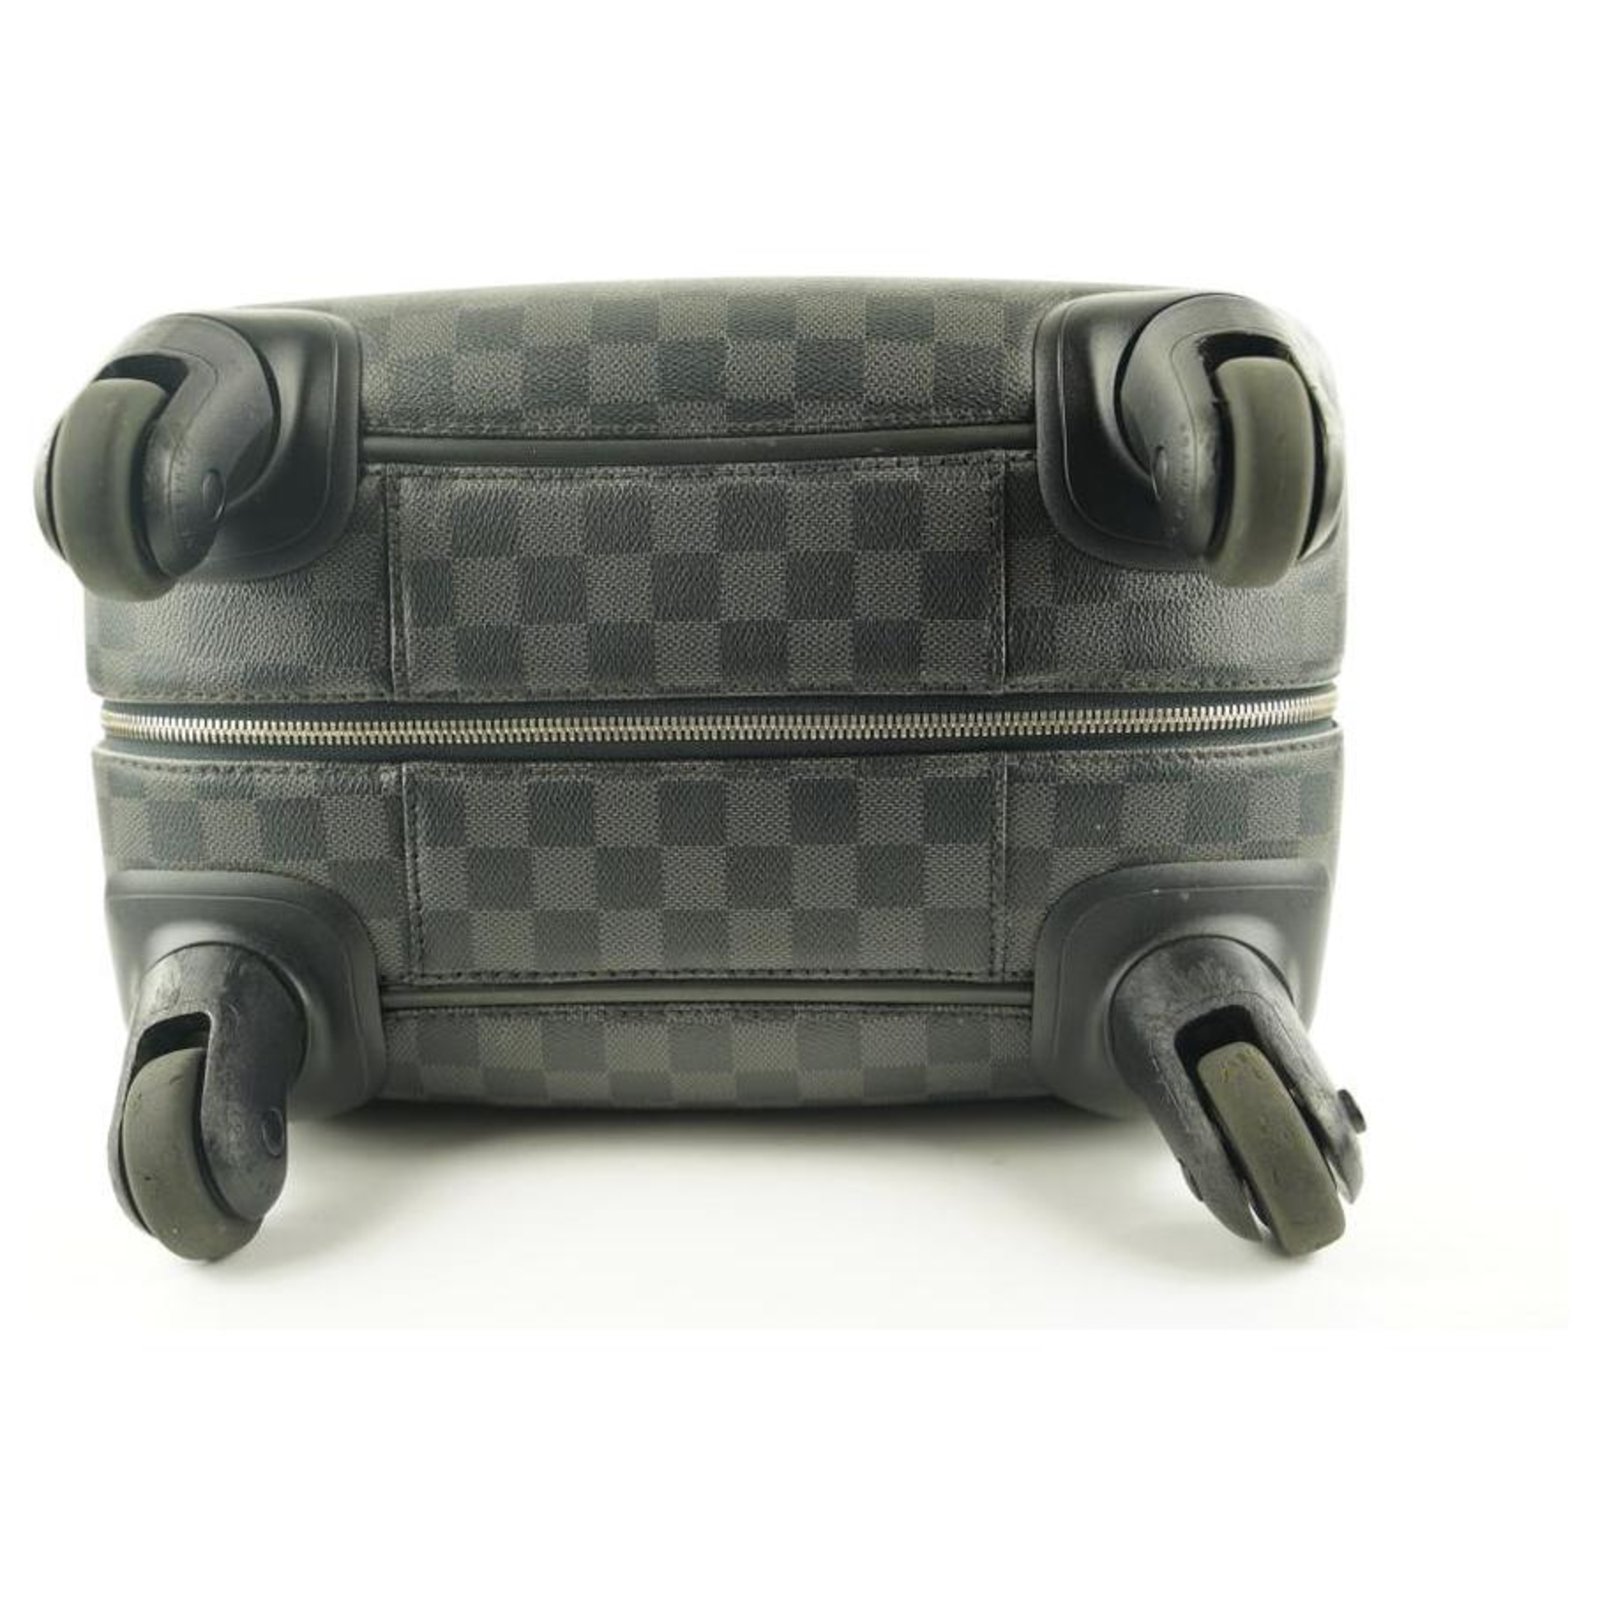 Louis Vuitton Damier Graphite Zephyr 55 Rolling Suitcase at